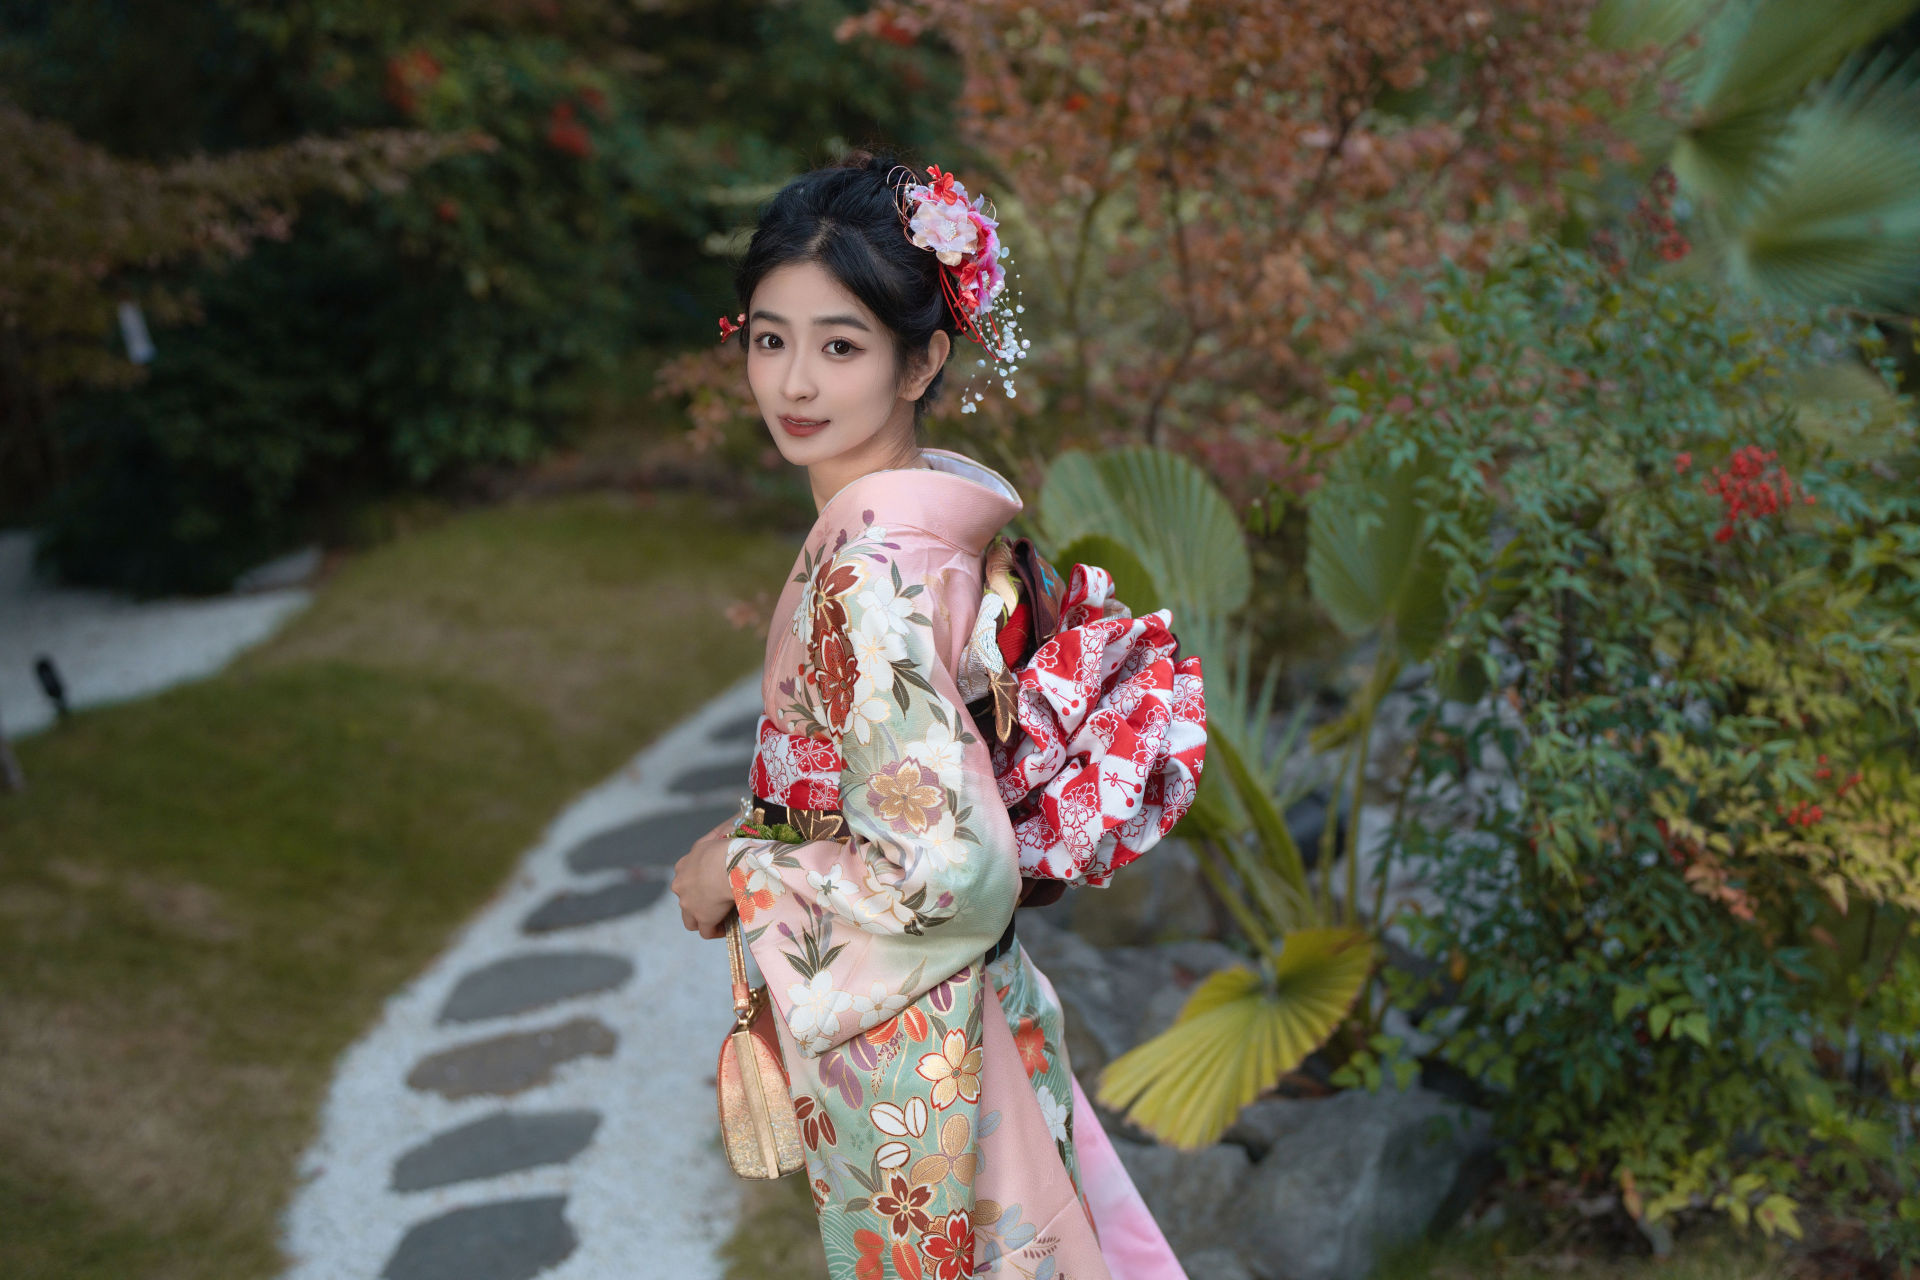 和服之女 精美 漂亮 优雅 养眼 日式和风 写真集 少女